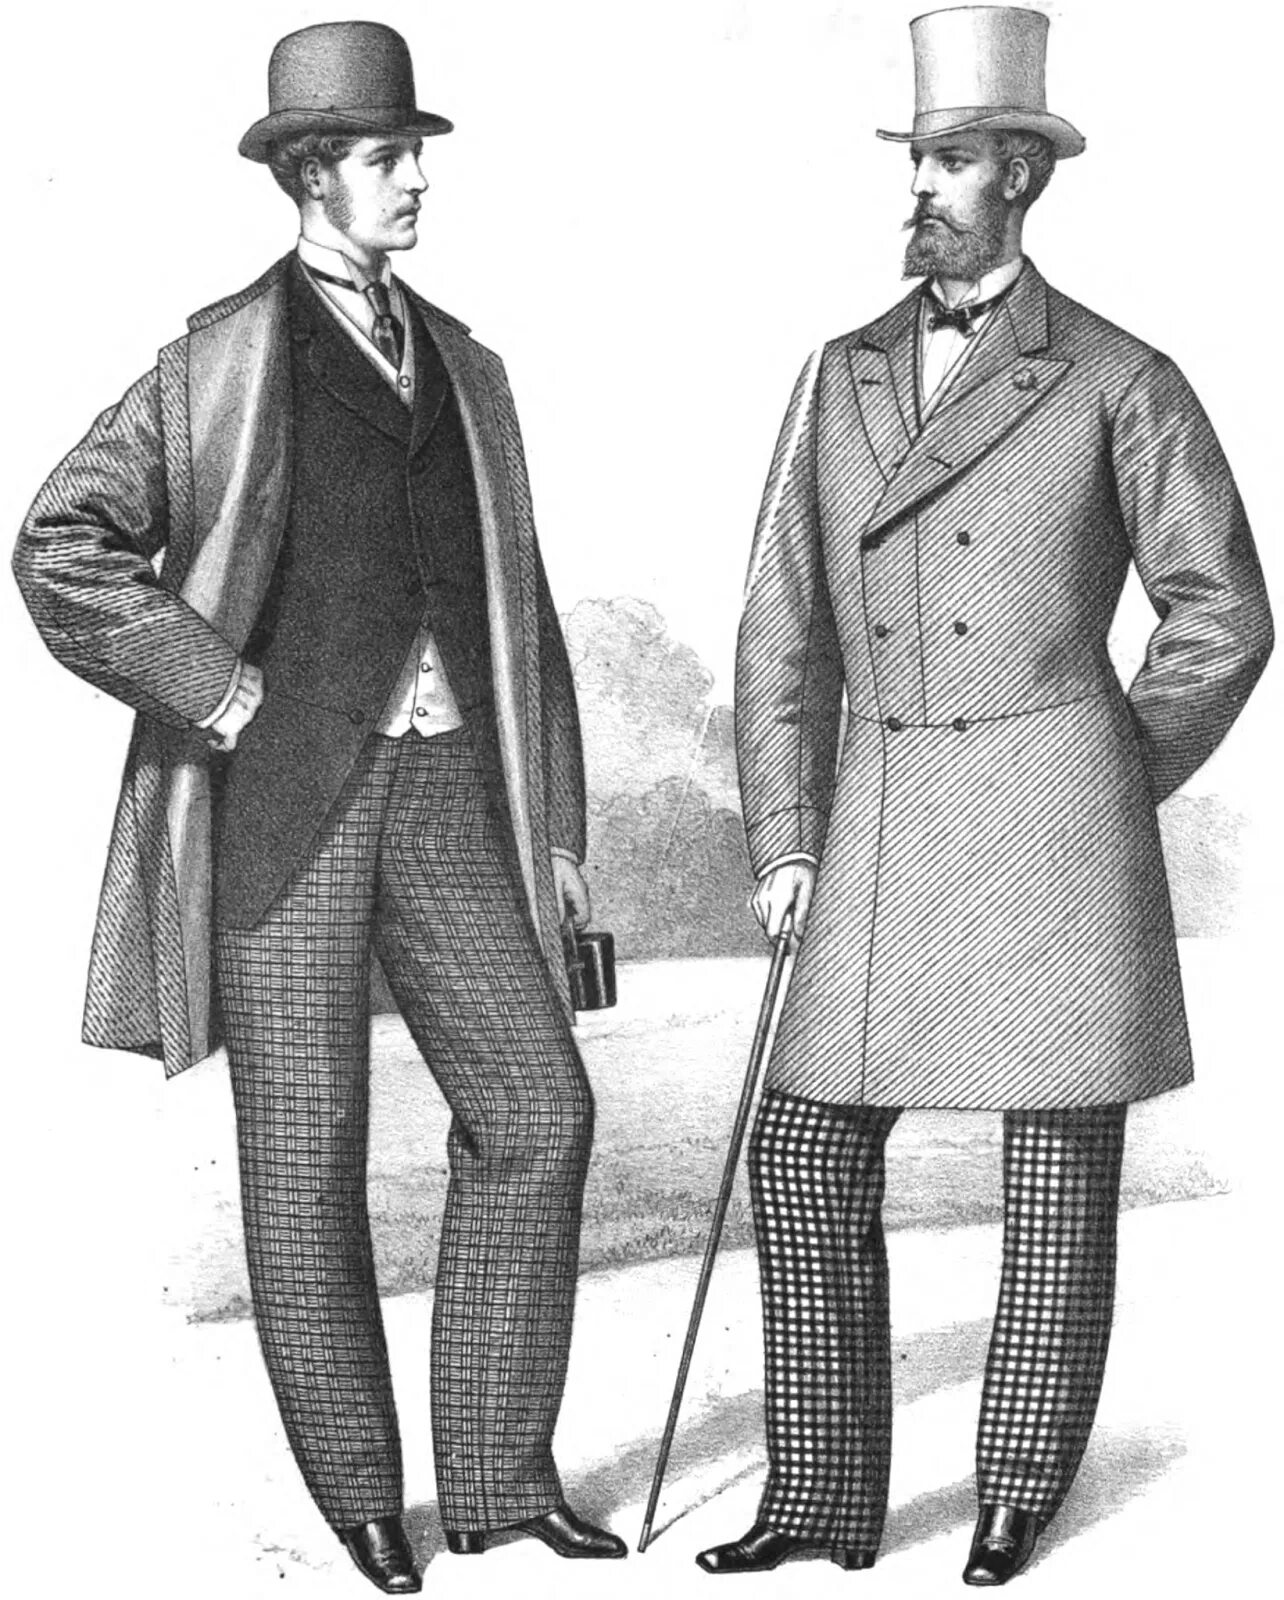 Сюртук 19 век. Редингтон одежда 19 век. Одежда Кристиан 19 века. Пальмерстон пальто 19 век.